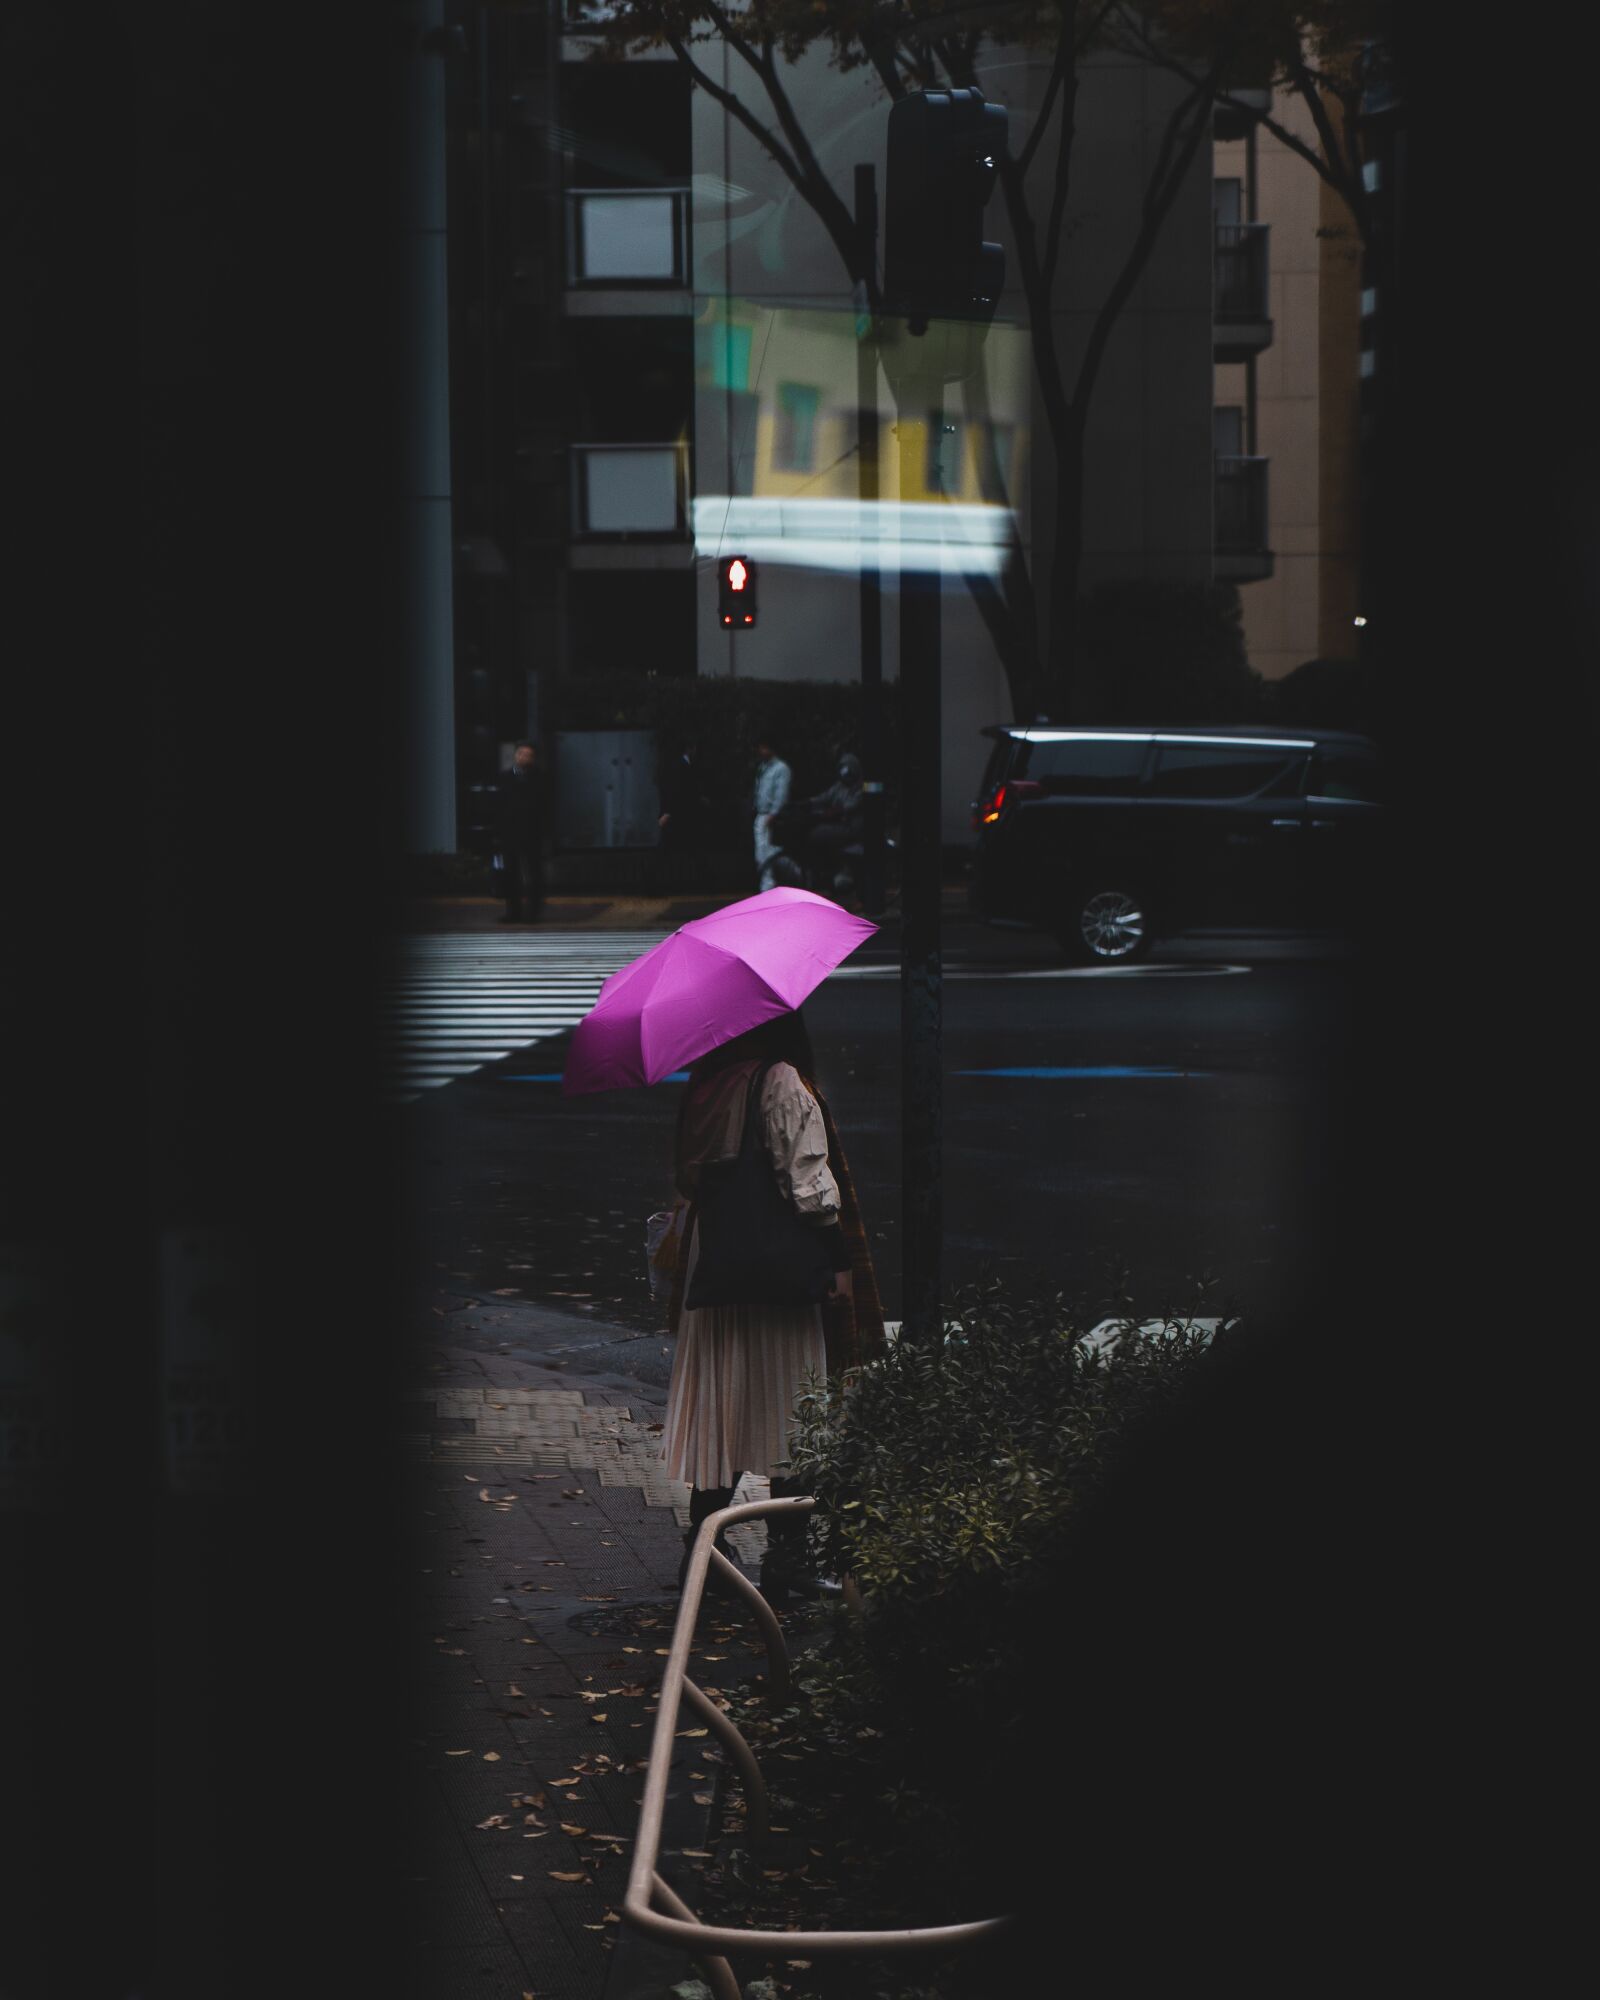 Sony a7 III + Sony Vario Tessar T* FE 24-70mm F4 ZA OSS sample photo. Woman, umbrella, street photography